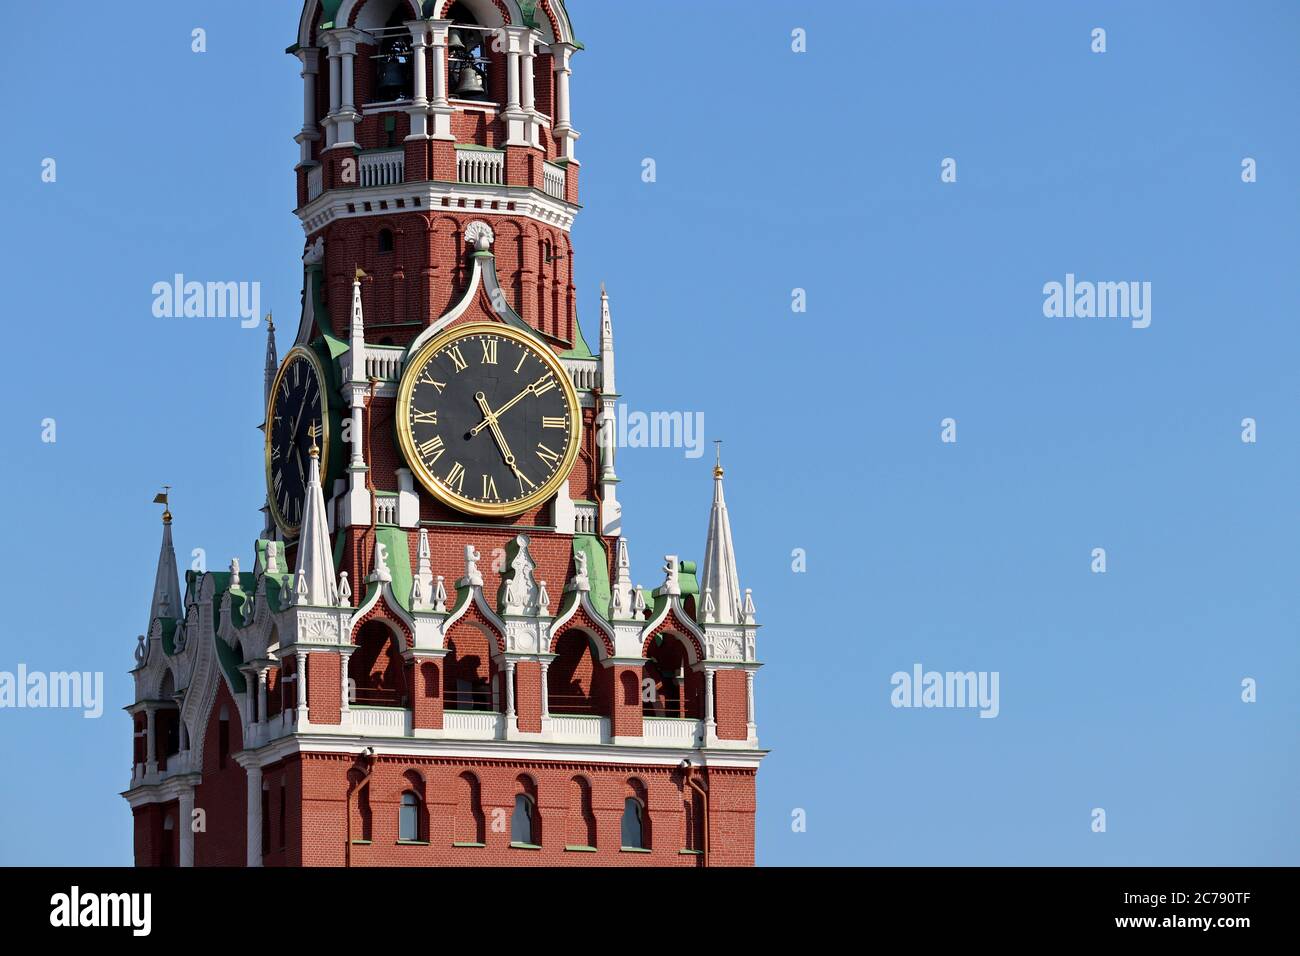 Glockenspiel des Spasskaya-Turms, Symbol Russlands auf dem Roten Platz. Moskauer Kreml Turm isoliert auf blauem Himmel Hintergrund Stockfoto